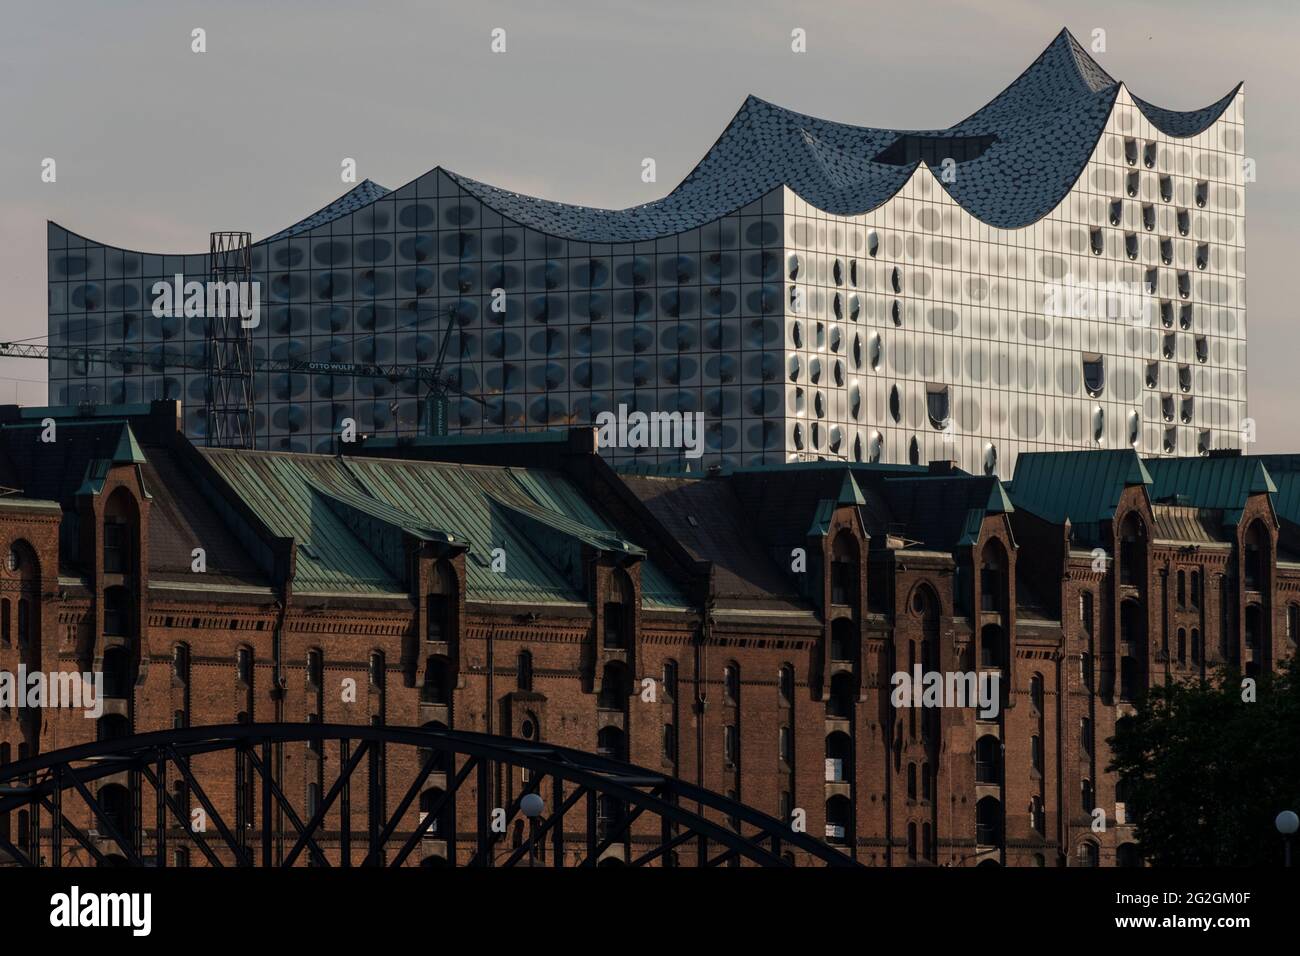 Die Elbphilharmonie, Hamburgs neue architektonische Sehenswürdigkeit am Rand der Speicherstadt. Foto de stock